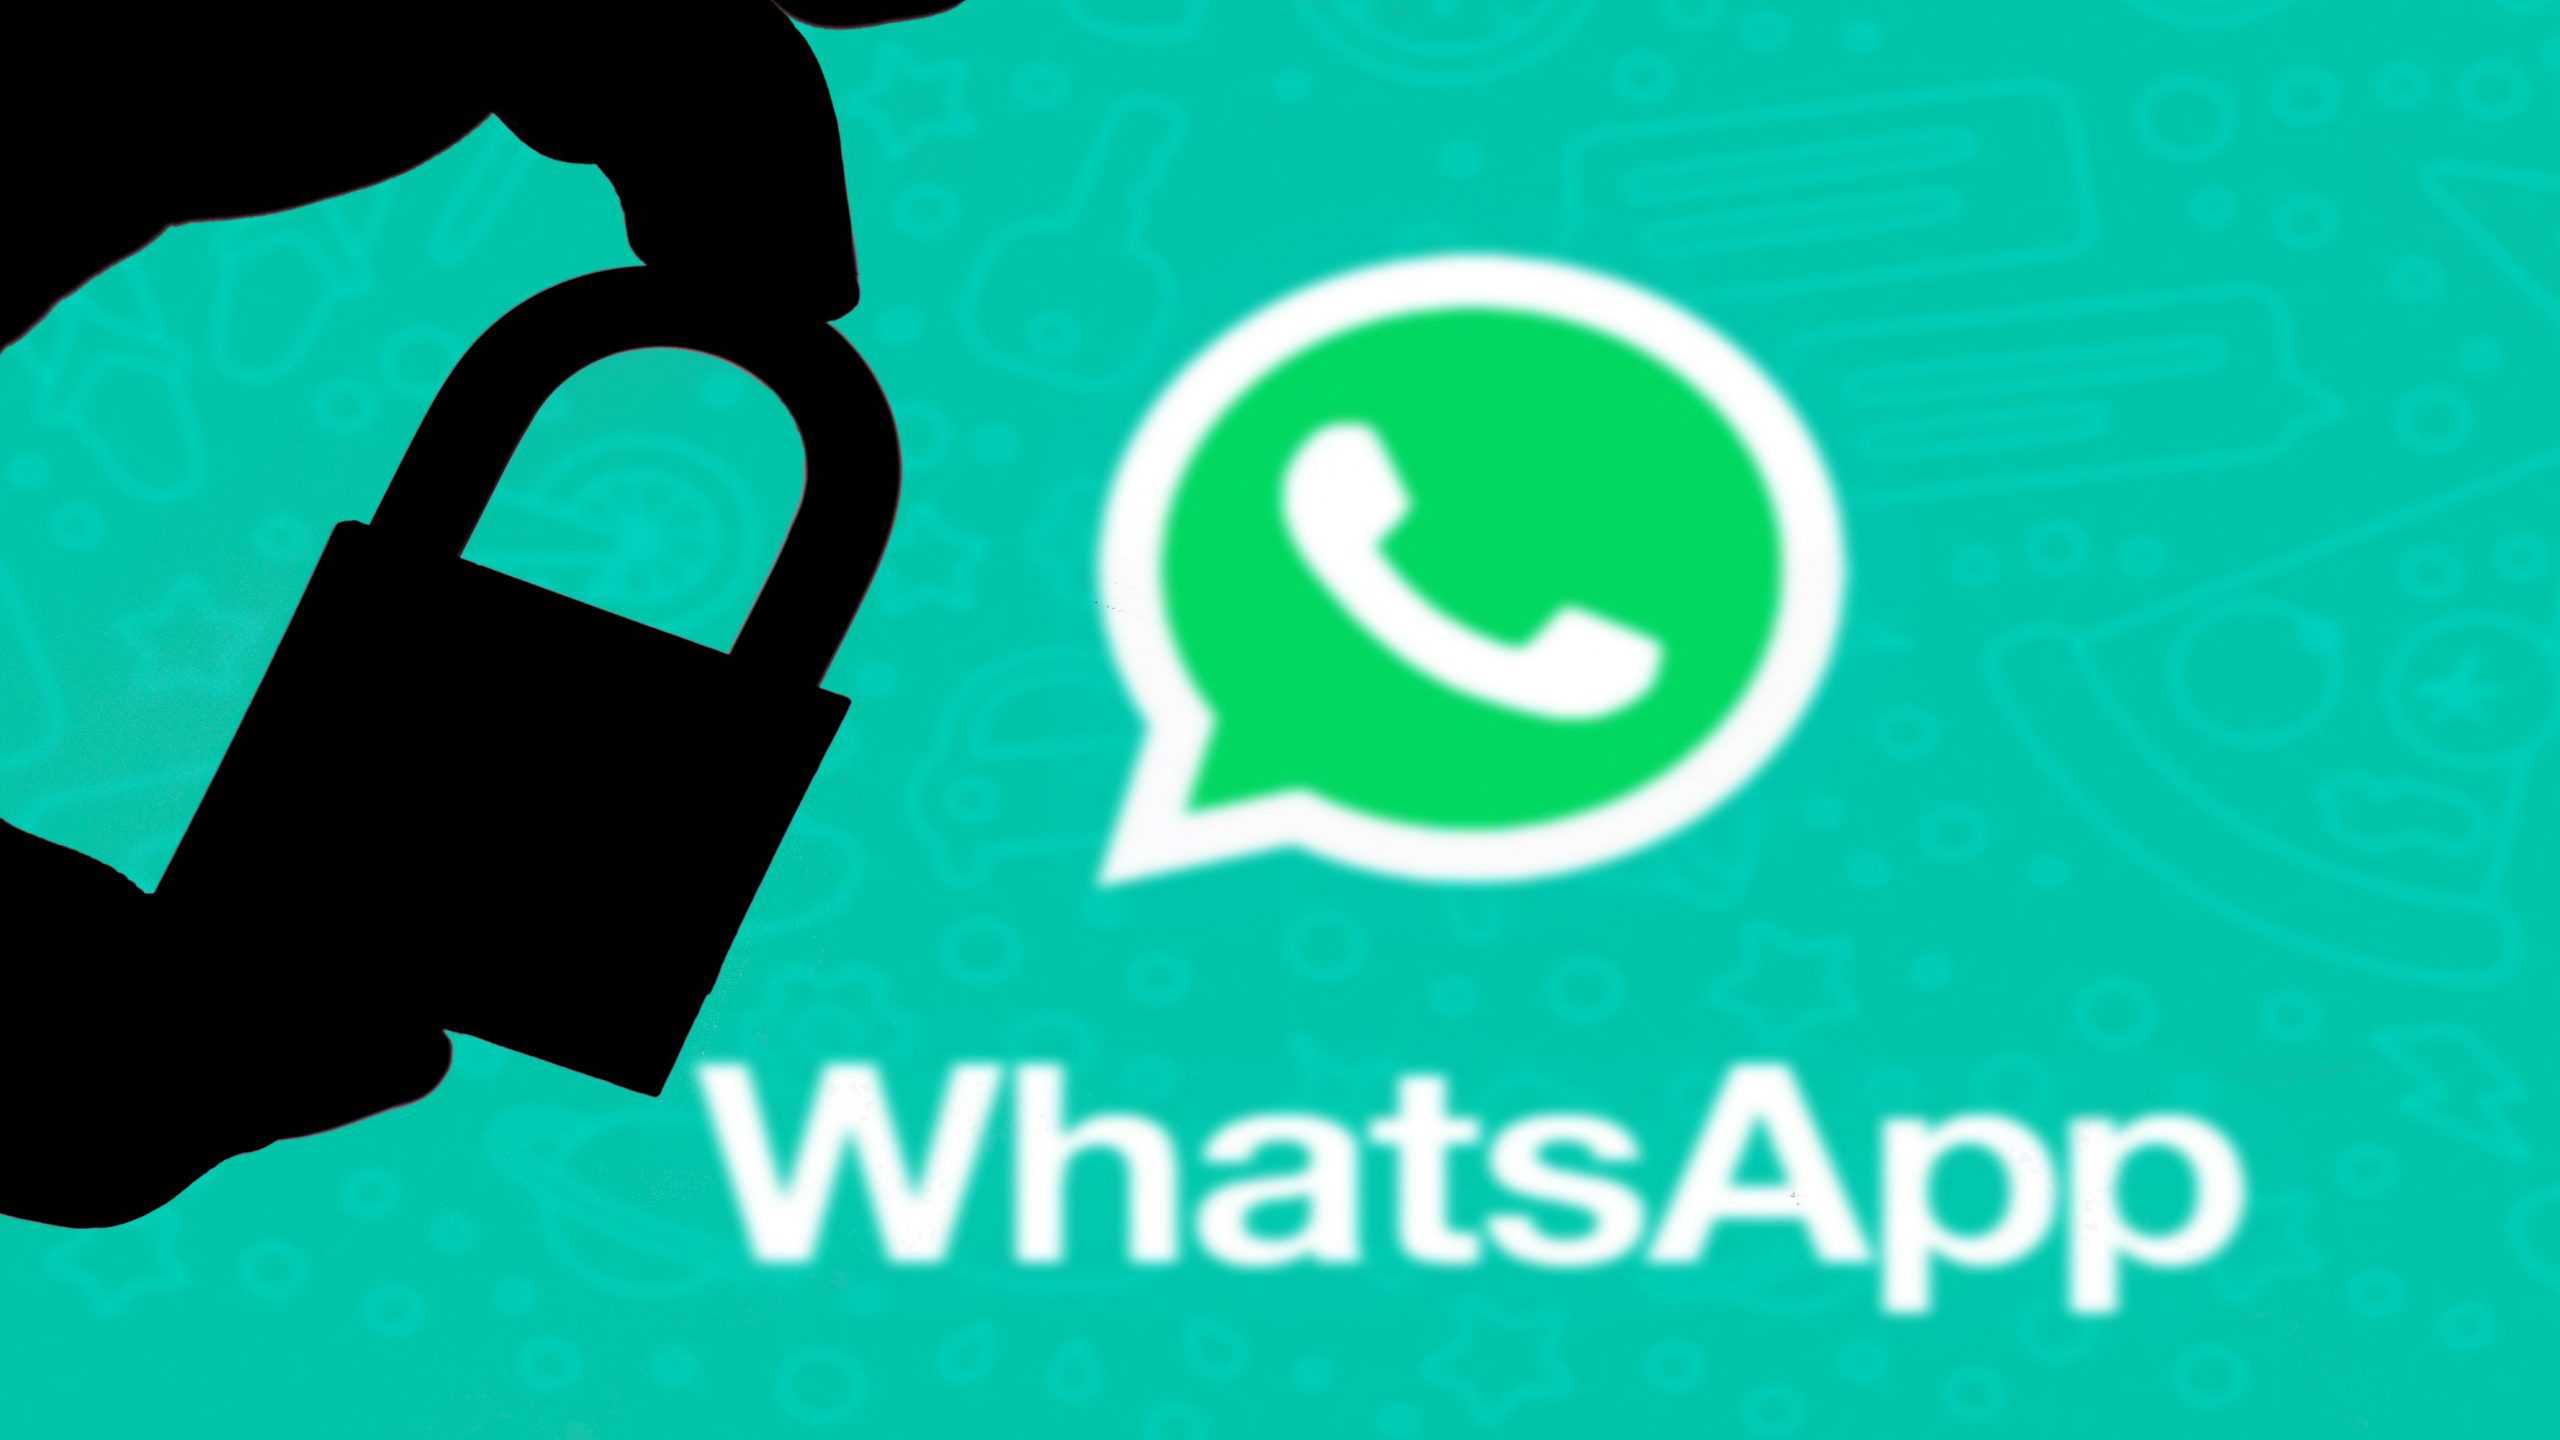 Nesta ilustração, um cadeado aparece ao lado do logo do WhatsApp. Conceito de proteção/vazamento de dados online. Questões de privacidade na internet.